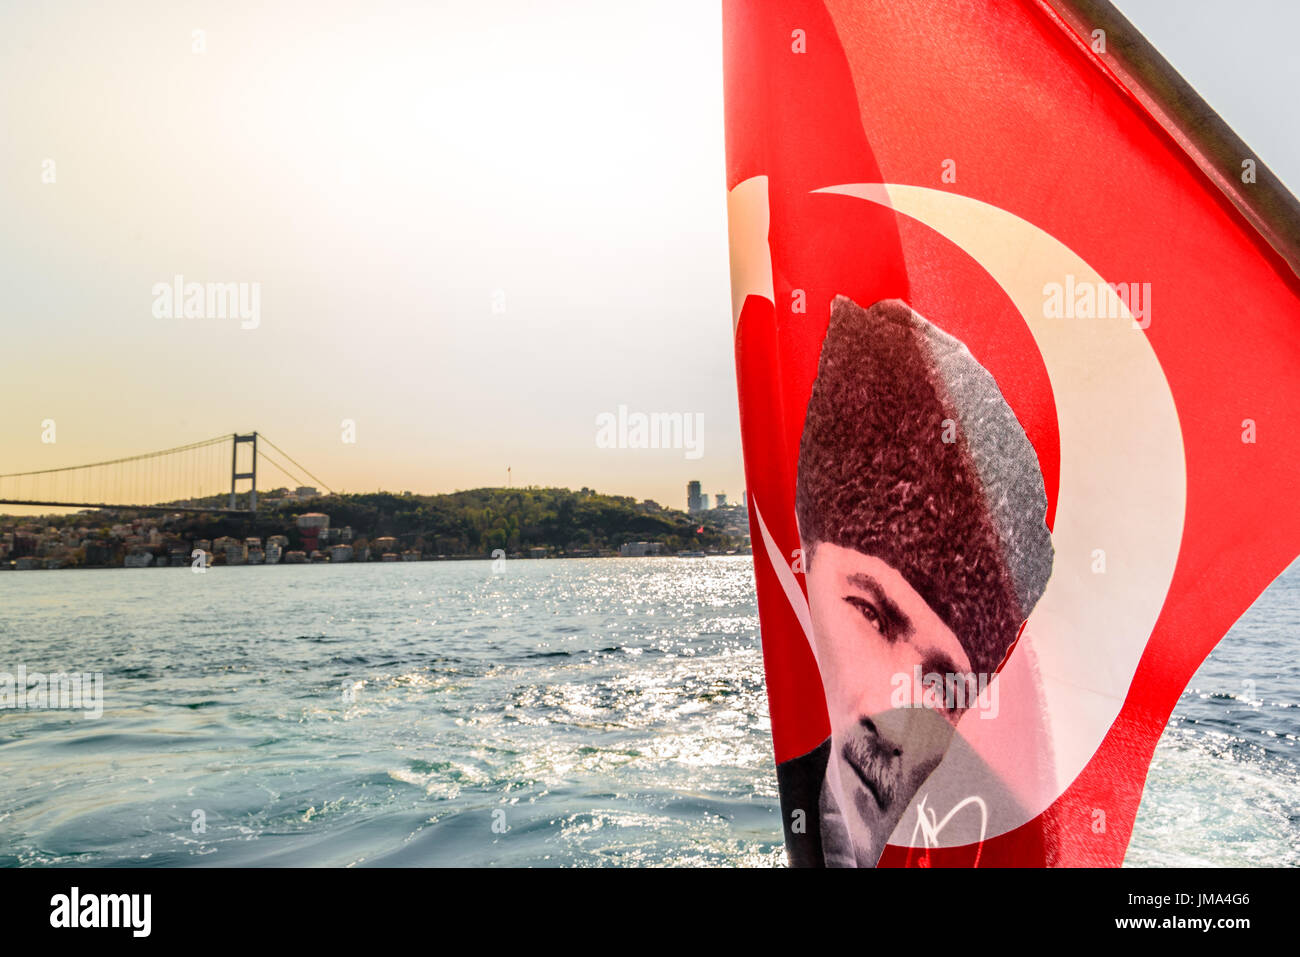 Vue du Bosphore, côte et mer baie du ferry avec drapeau turc sur la photo d'Ataturk(Père des Turcs)agitant au vent, Beykoz à Istanbul Banque D'Images